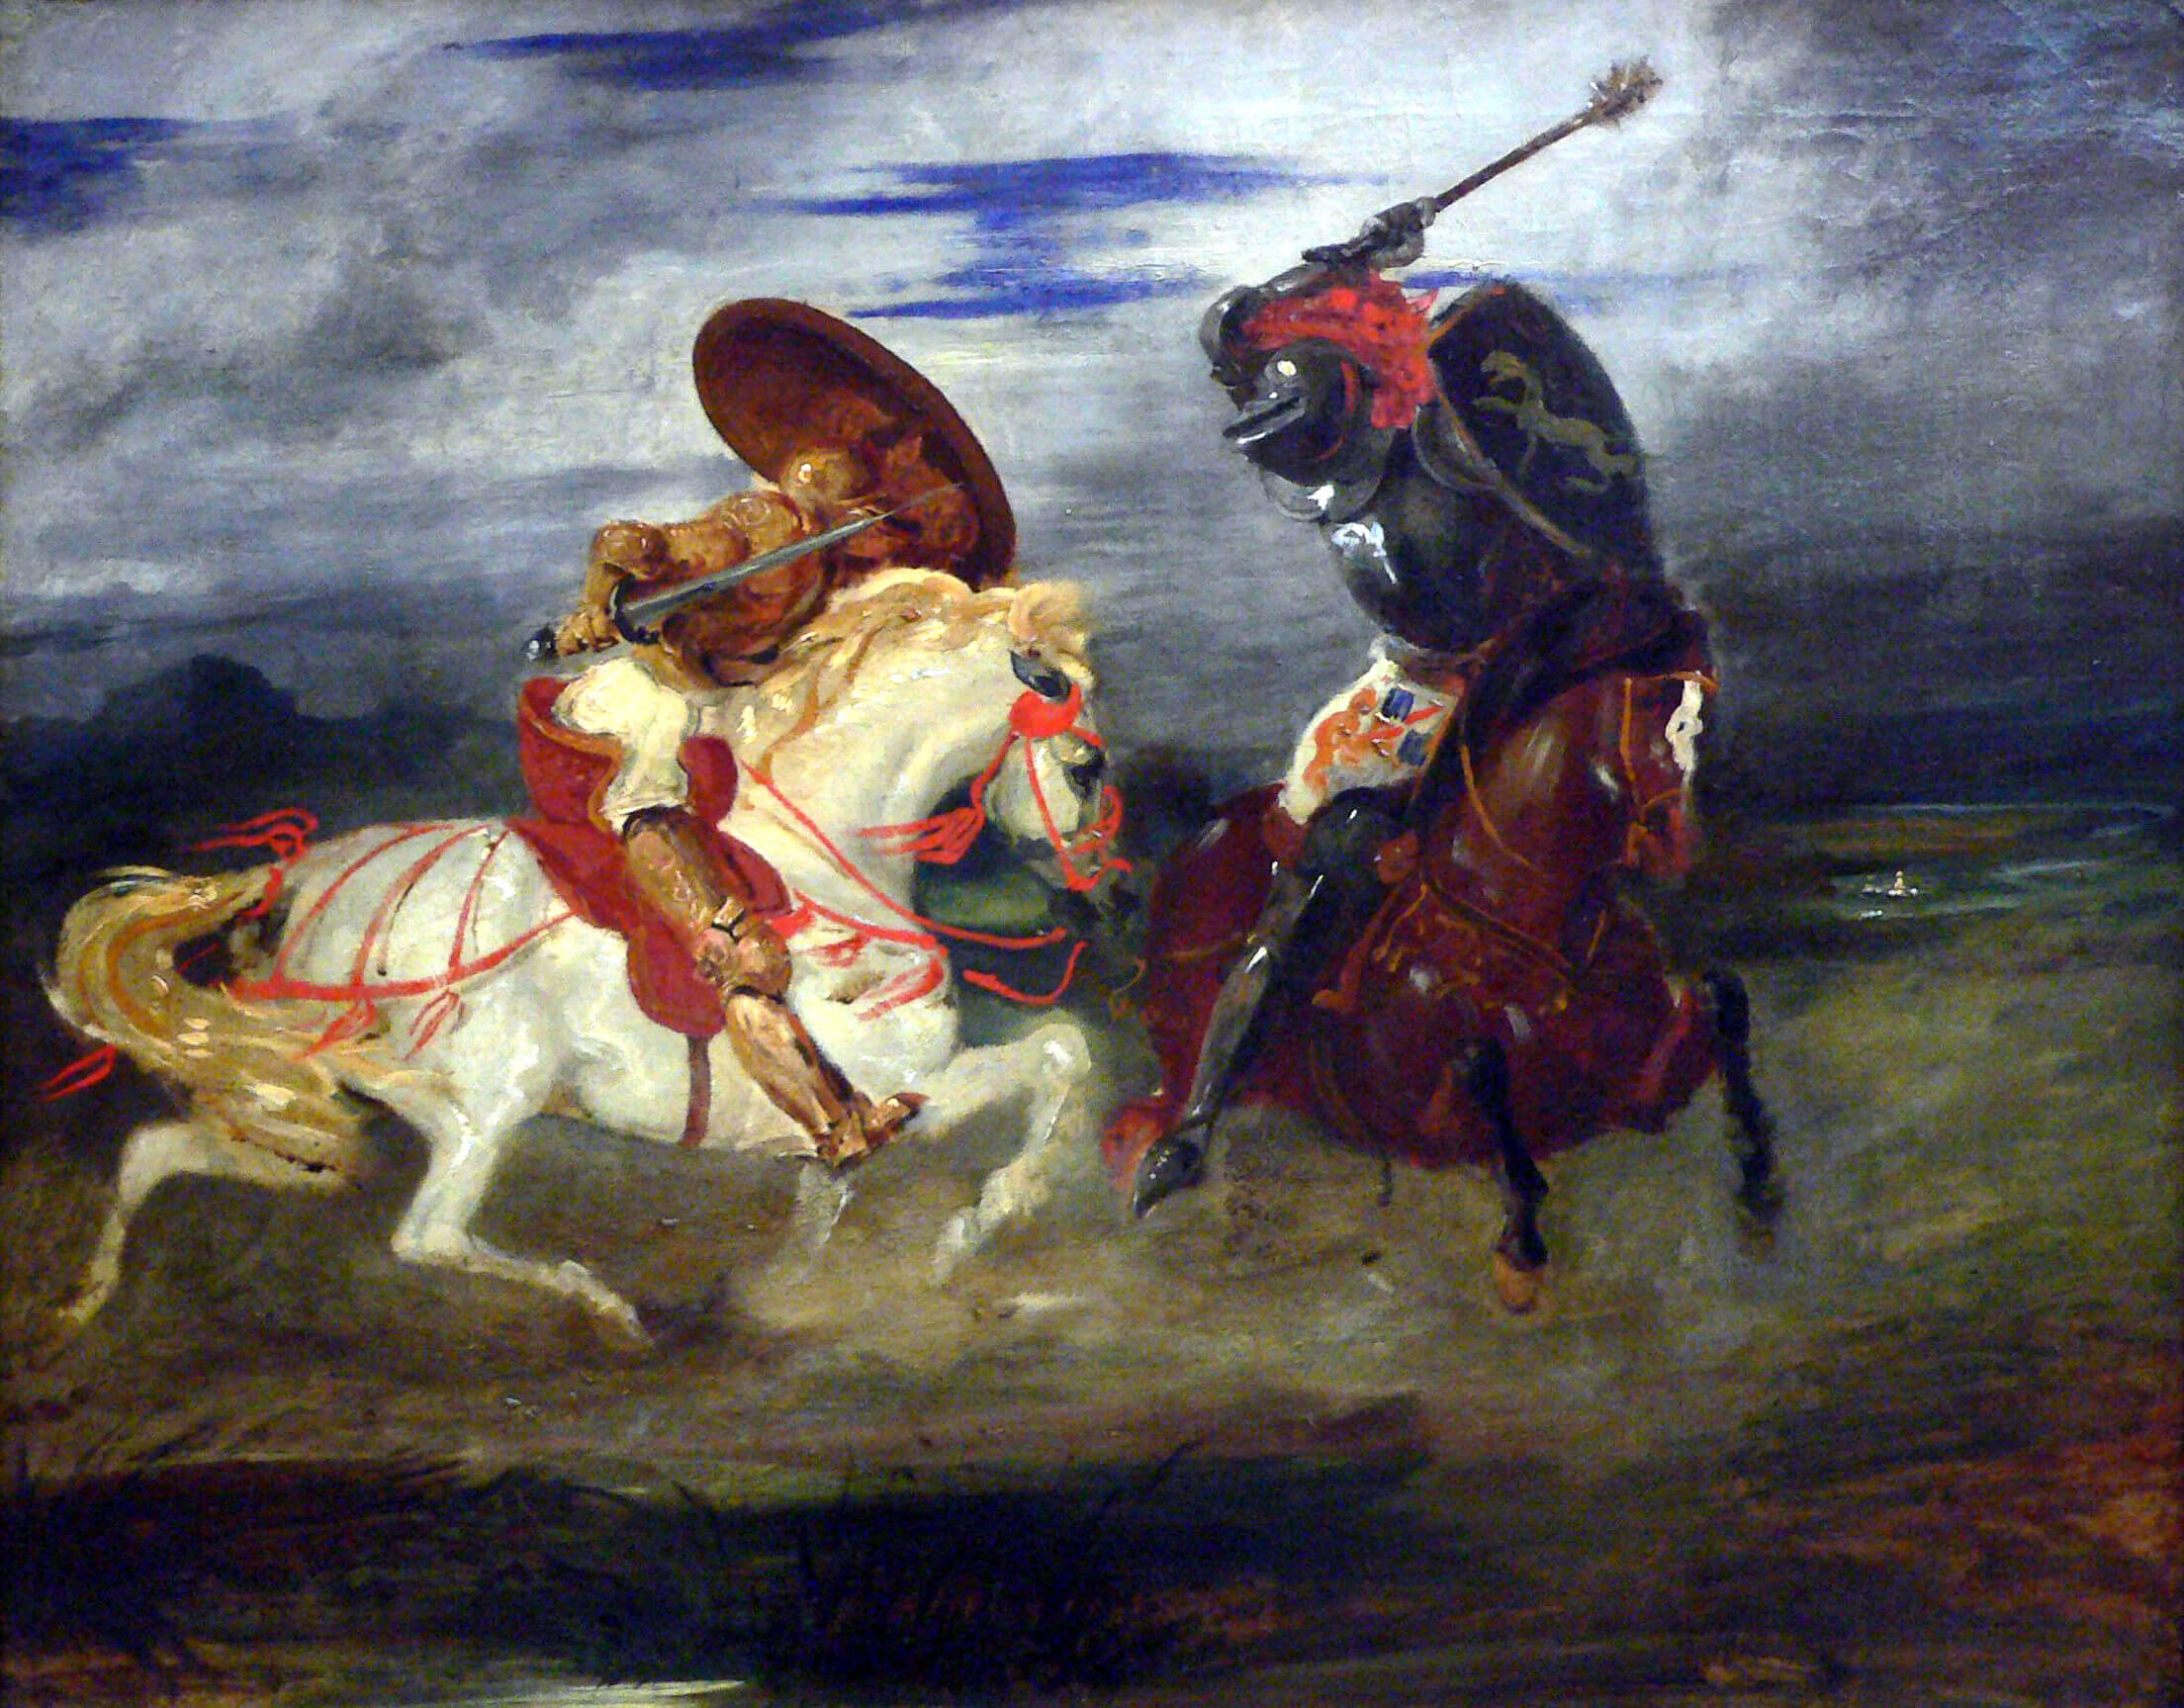 مبارزة الفرسان، قتال الفرسان في الحملة، لوحة من عام 1825 بريشة أجين ديلاكروا.